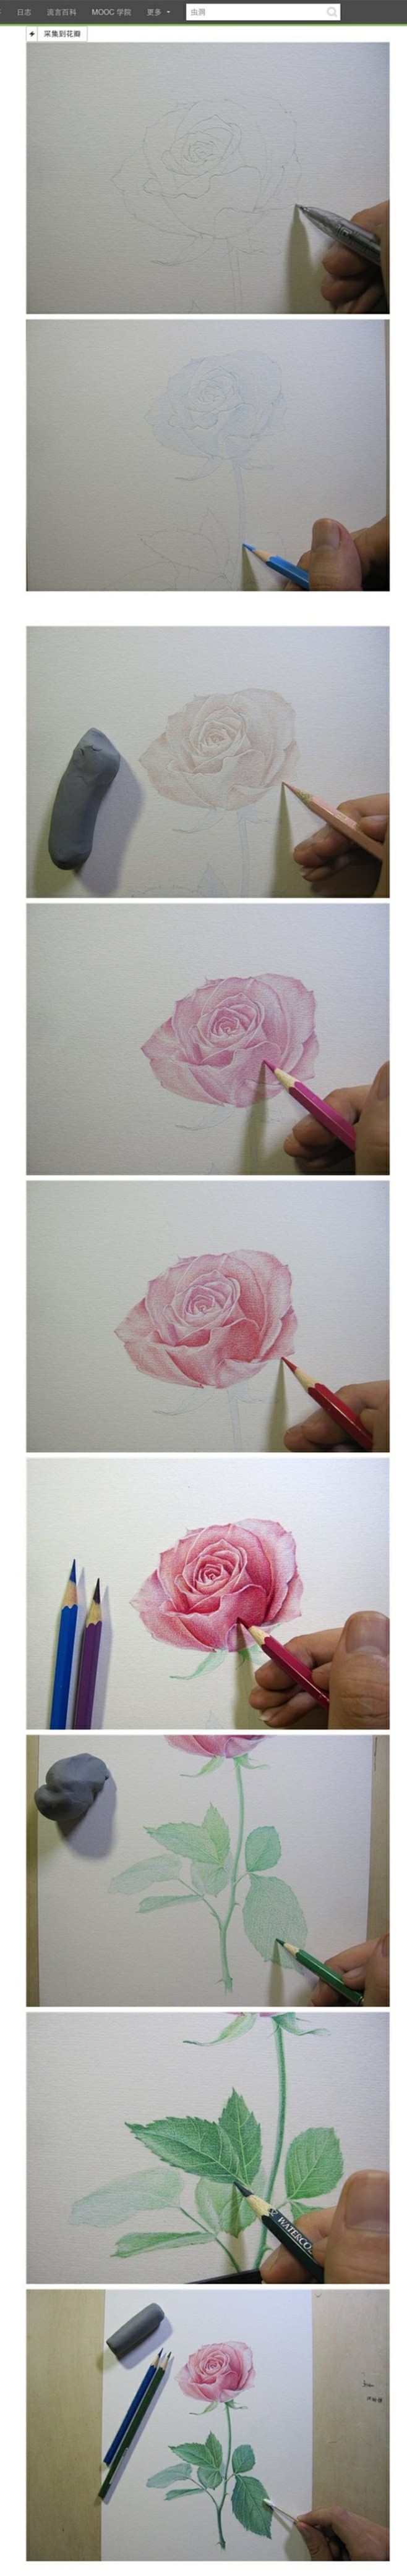 【彩铅手绘】玫瑰